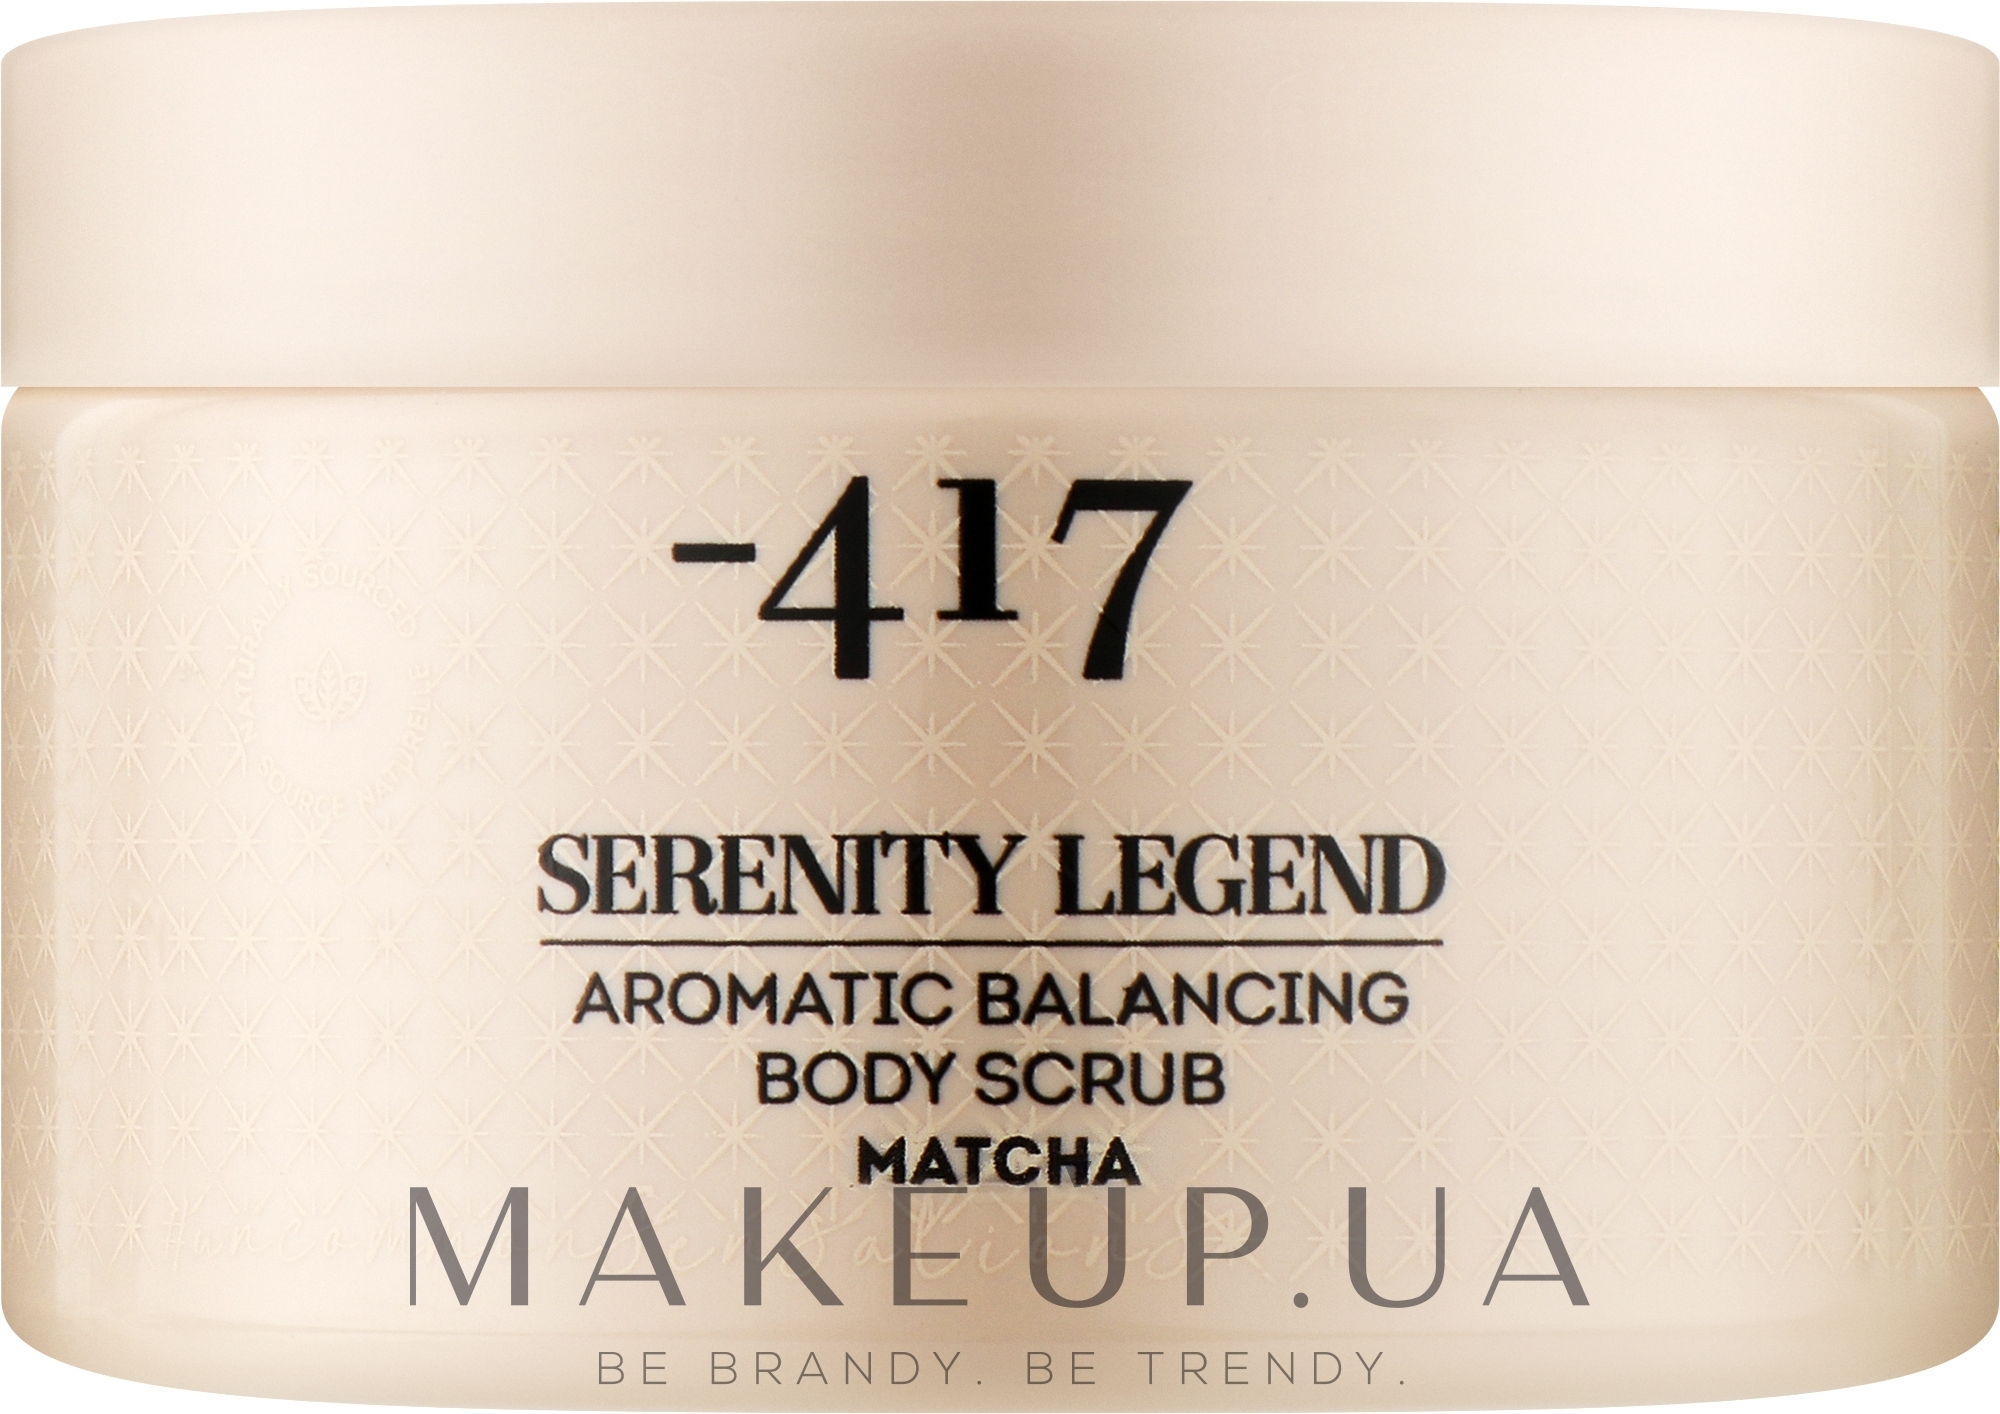 Скраб ароматический для улучшения баланса кожи тела "Матча" - - 417 Serenity Legend Aromatic Balancing Body Scrub Matcha — фото 400g